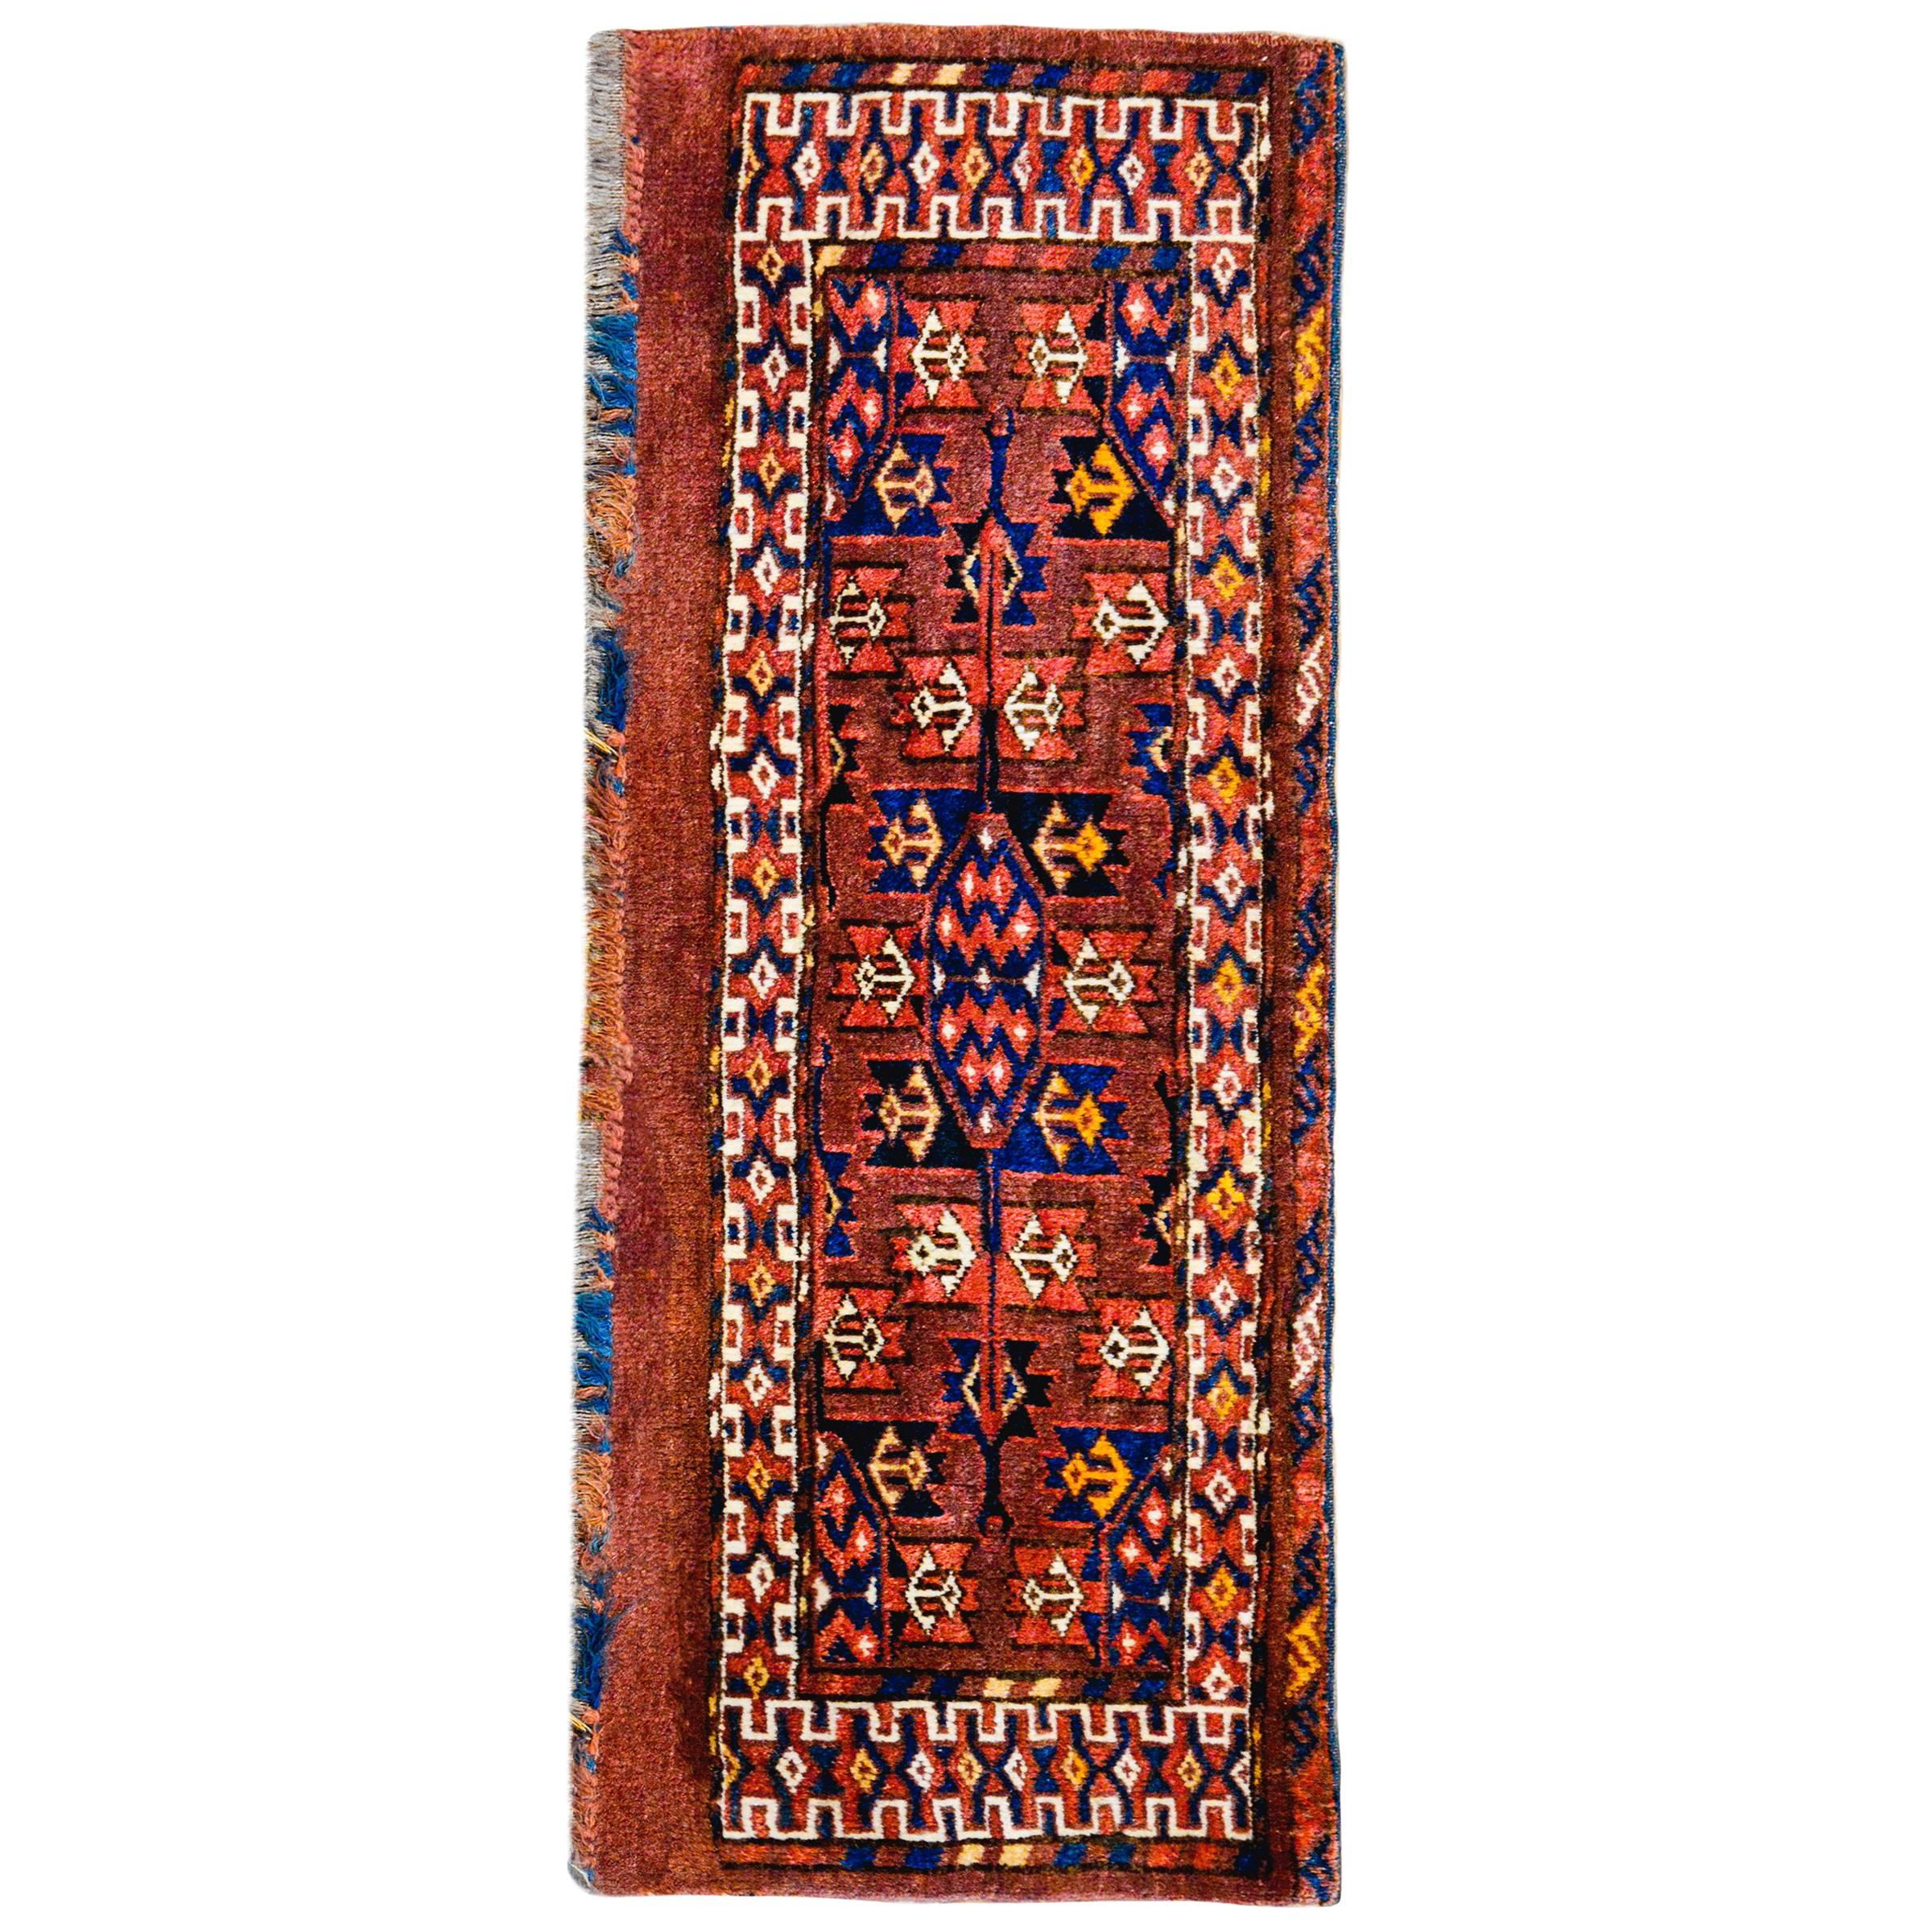 Detail Teppich Asiatische Muster Nomer 3